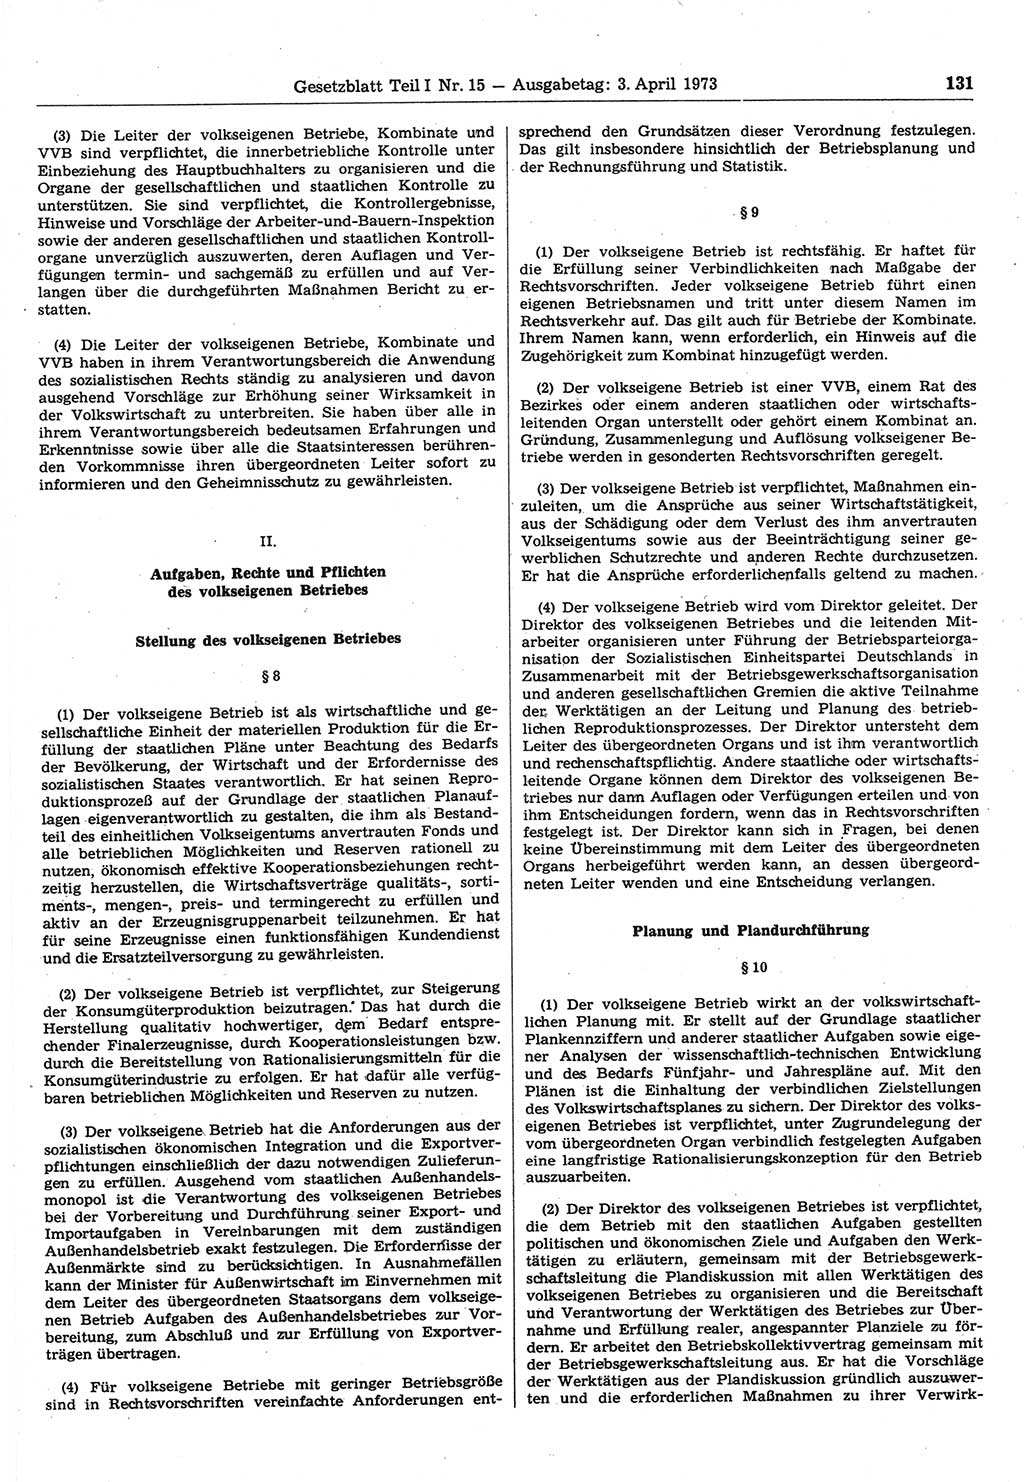 Gesetzblatt (GBl.) der Deutschen Demokratischen Republik (DDR) Teil Ⅰ 1973, Seite 131 (GBl. DDR Ⅰ 1973, S. 131)